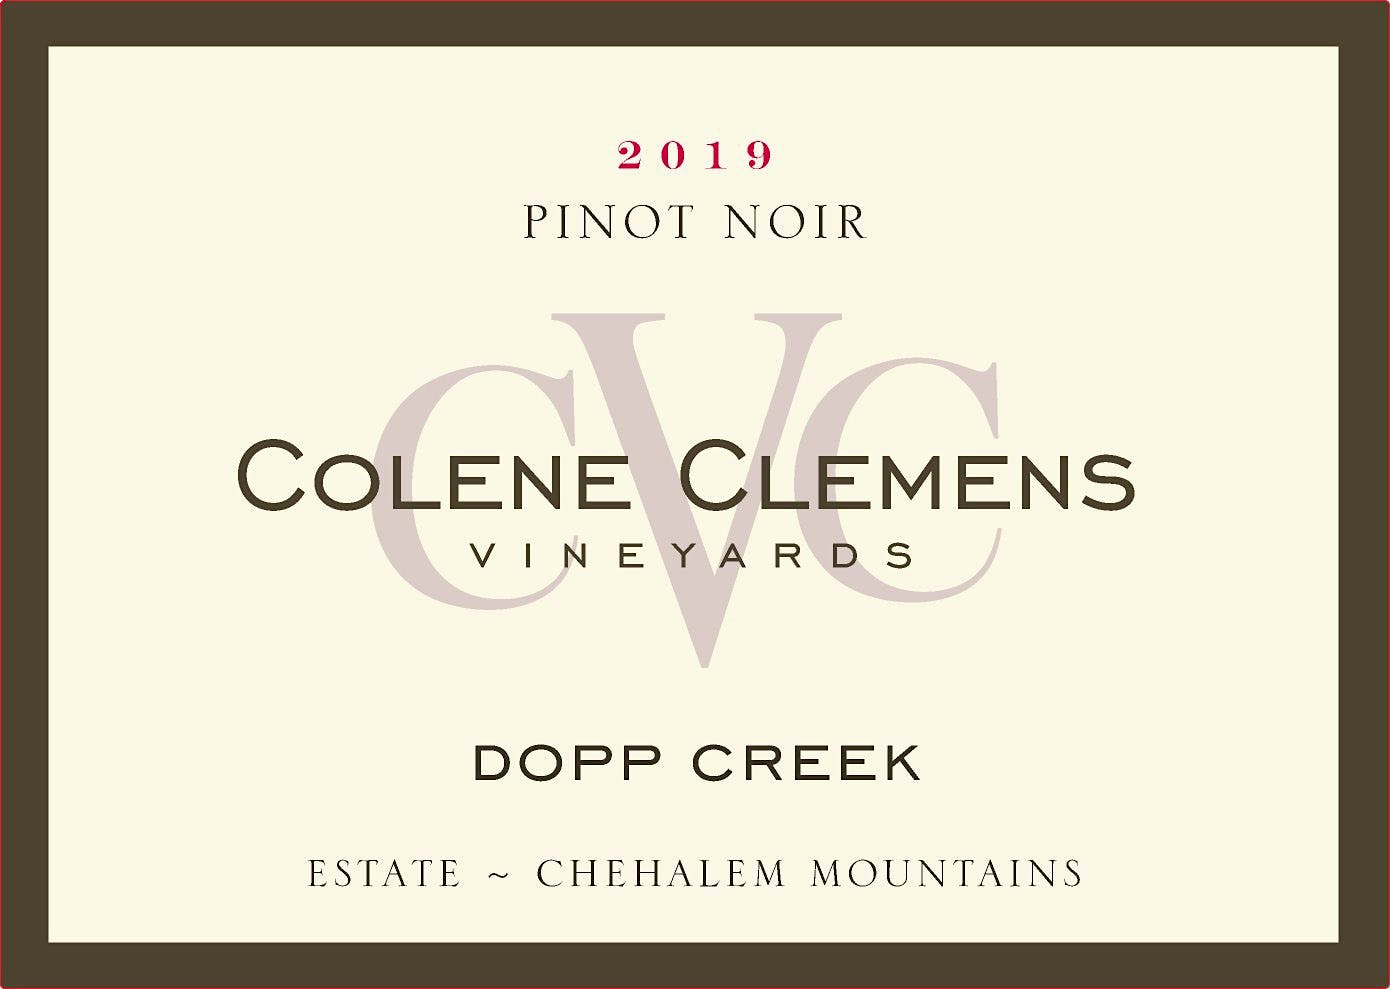 Label for Colene Clemens